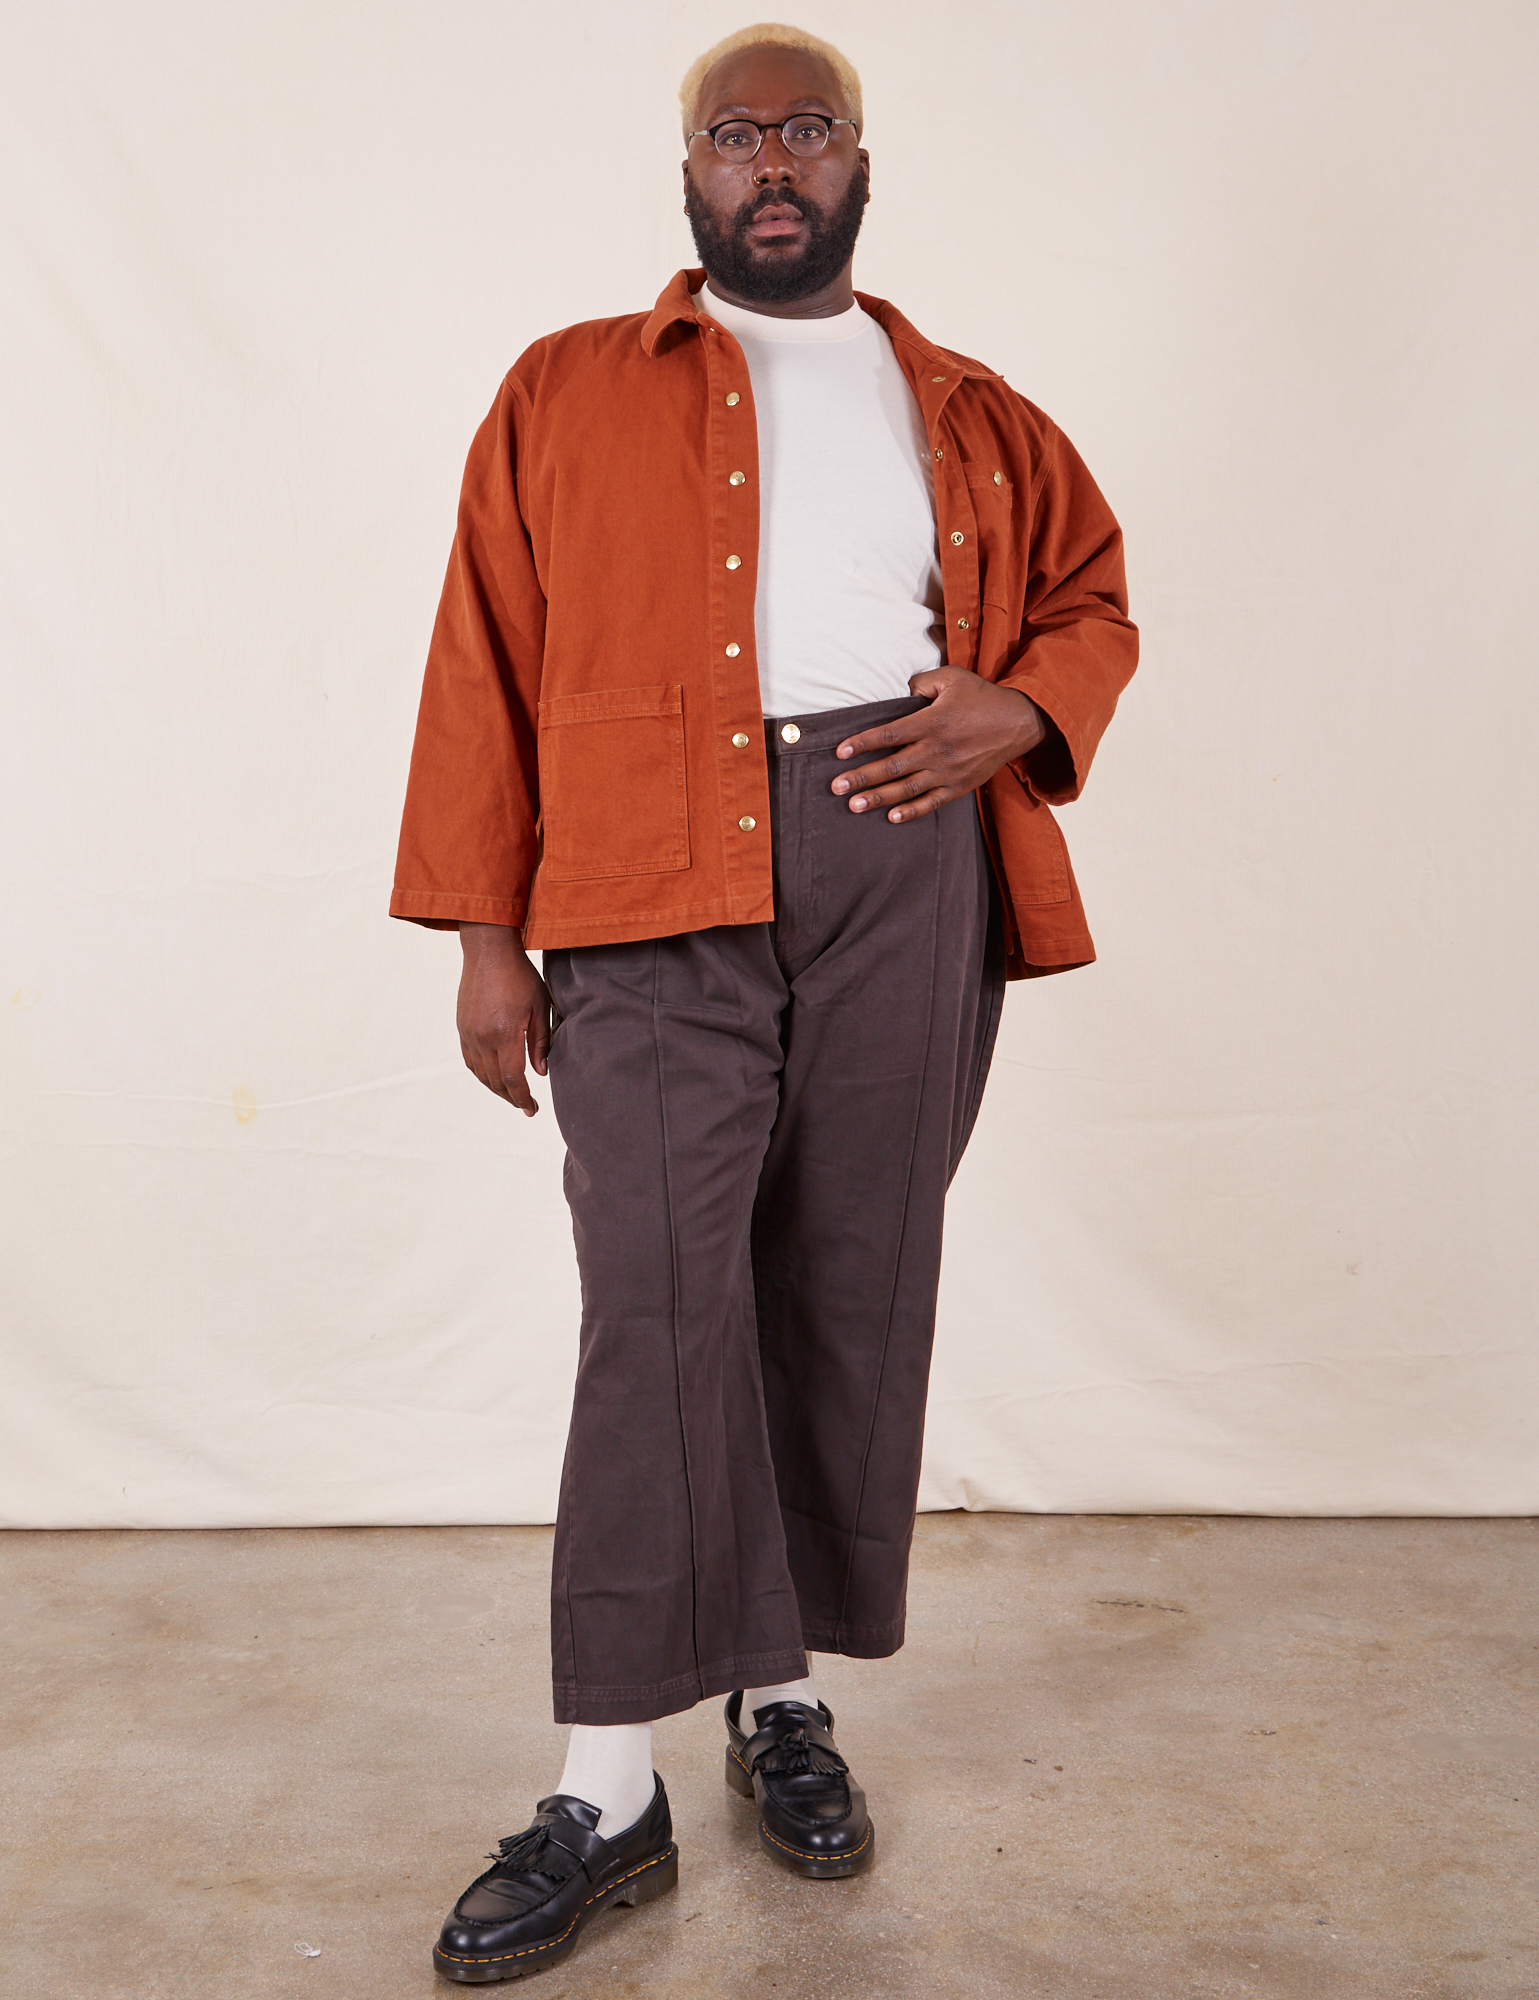 Denim Work Jacket in Burnt Terracotta on Elijah wearing vintage off-white Organic Tee and espresso brown Western Pants